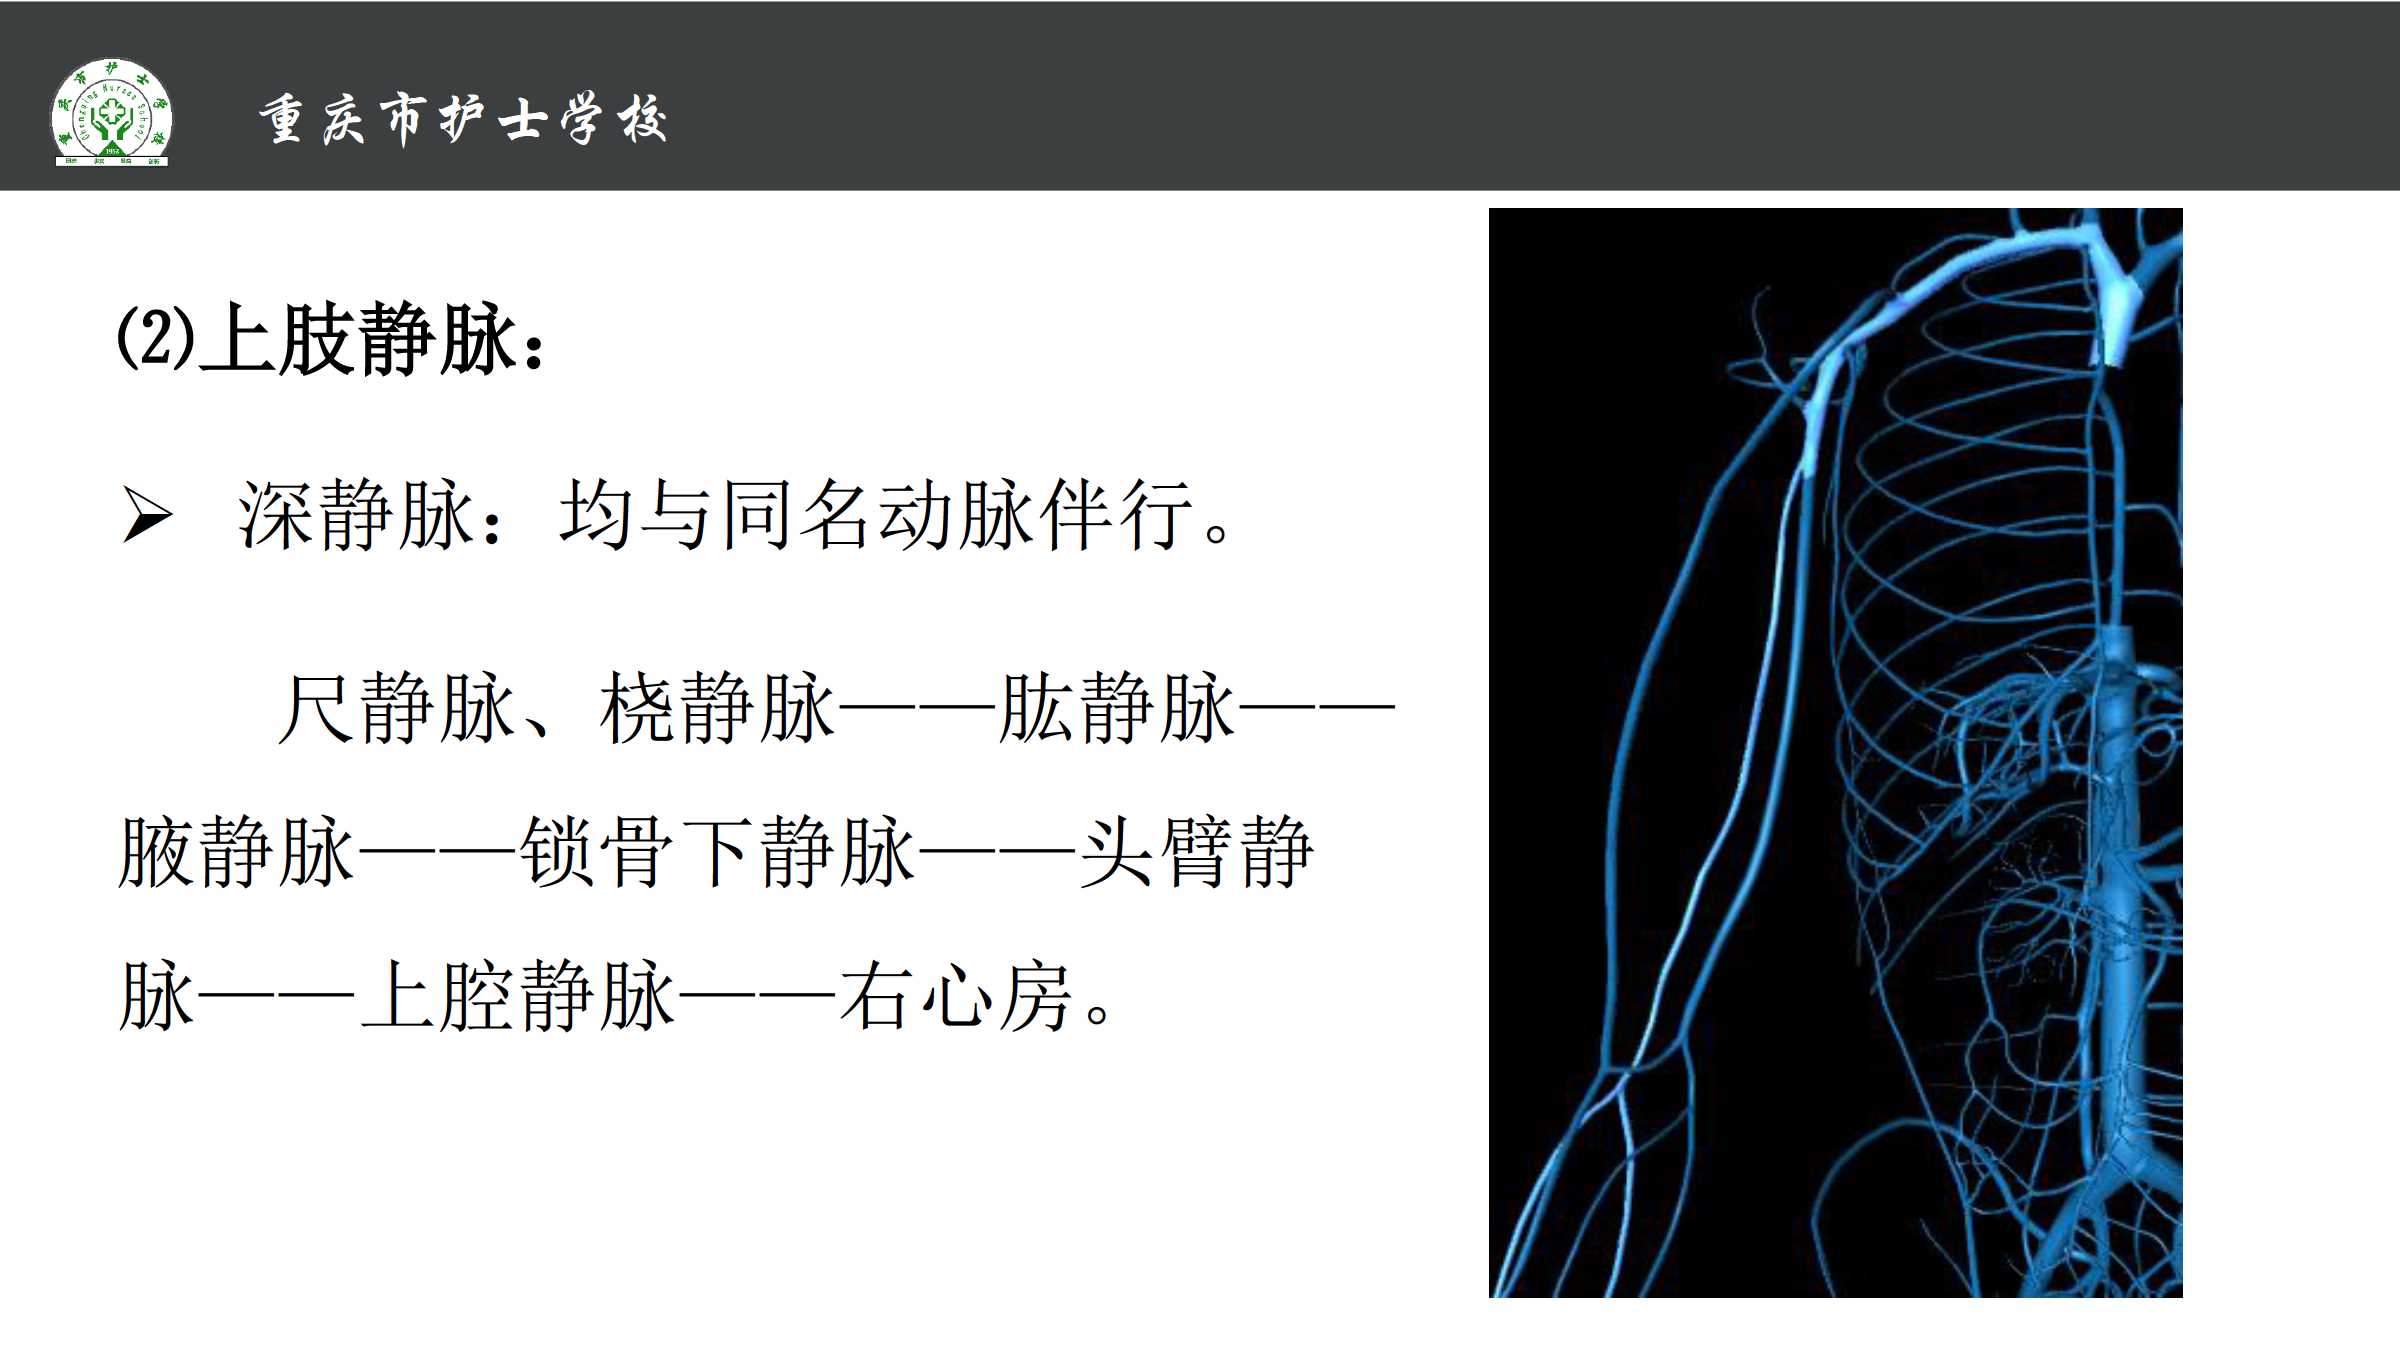 1.4 体循环的静脉 所属课程:《解剖学基础》